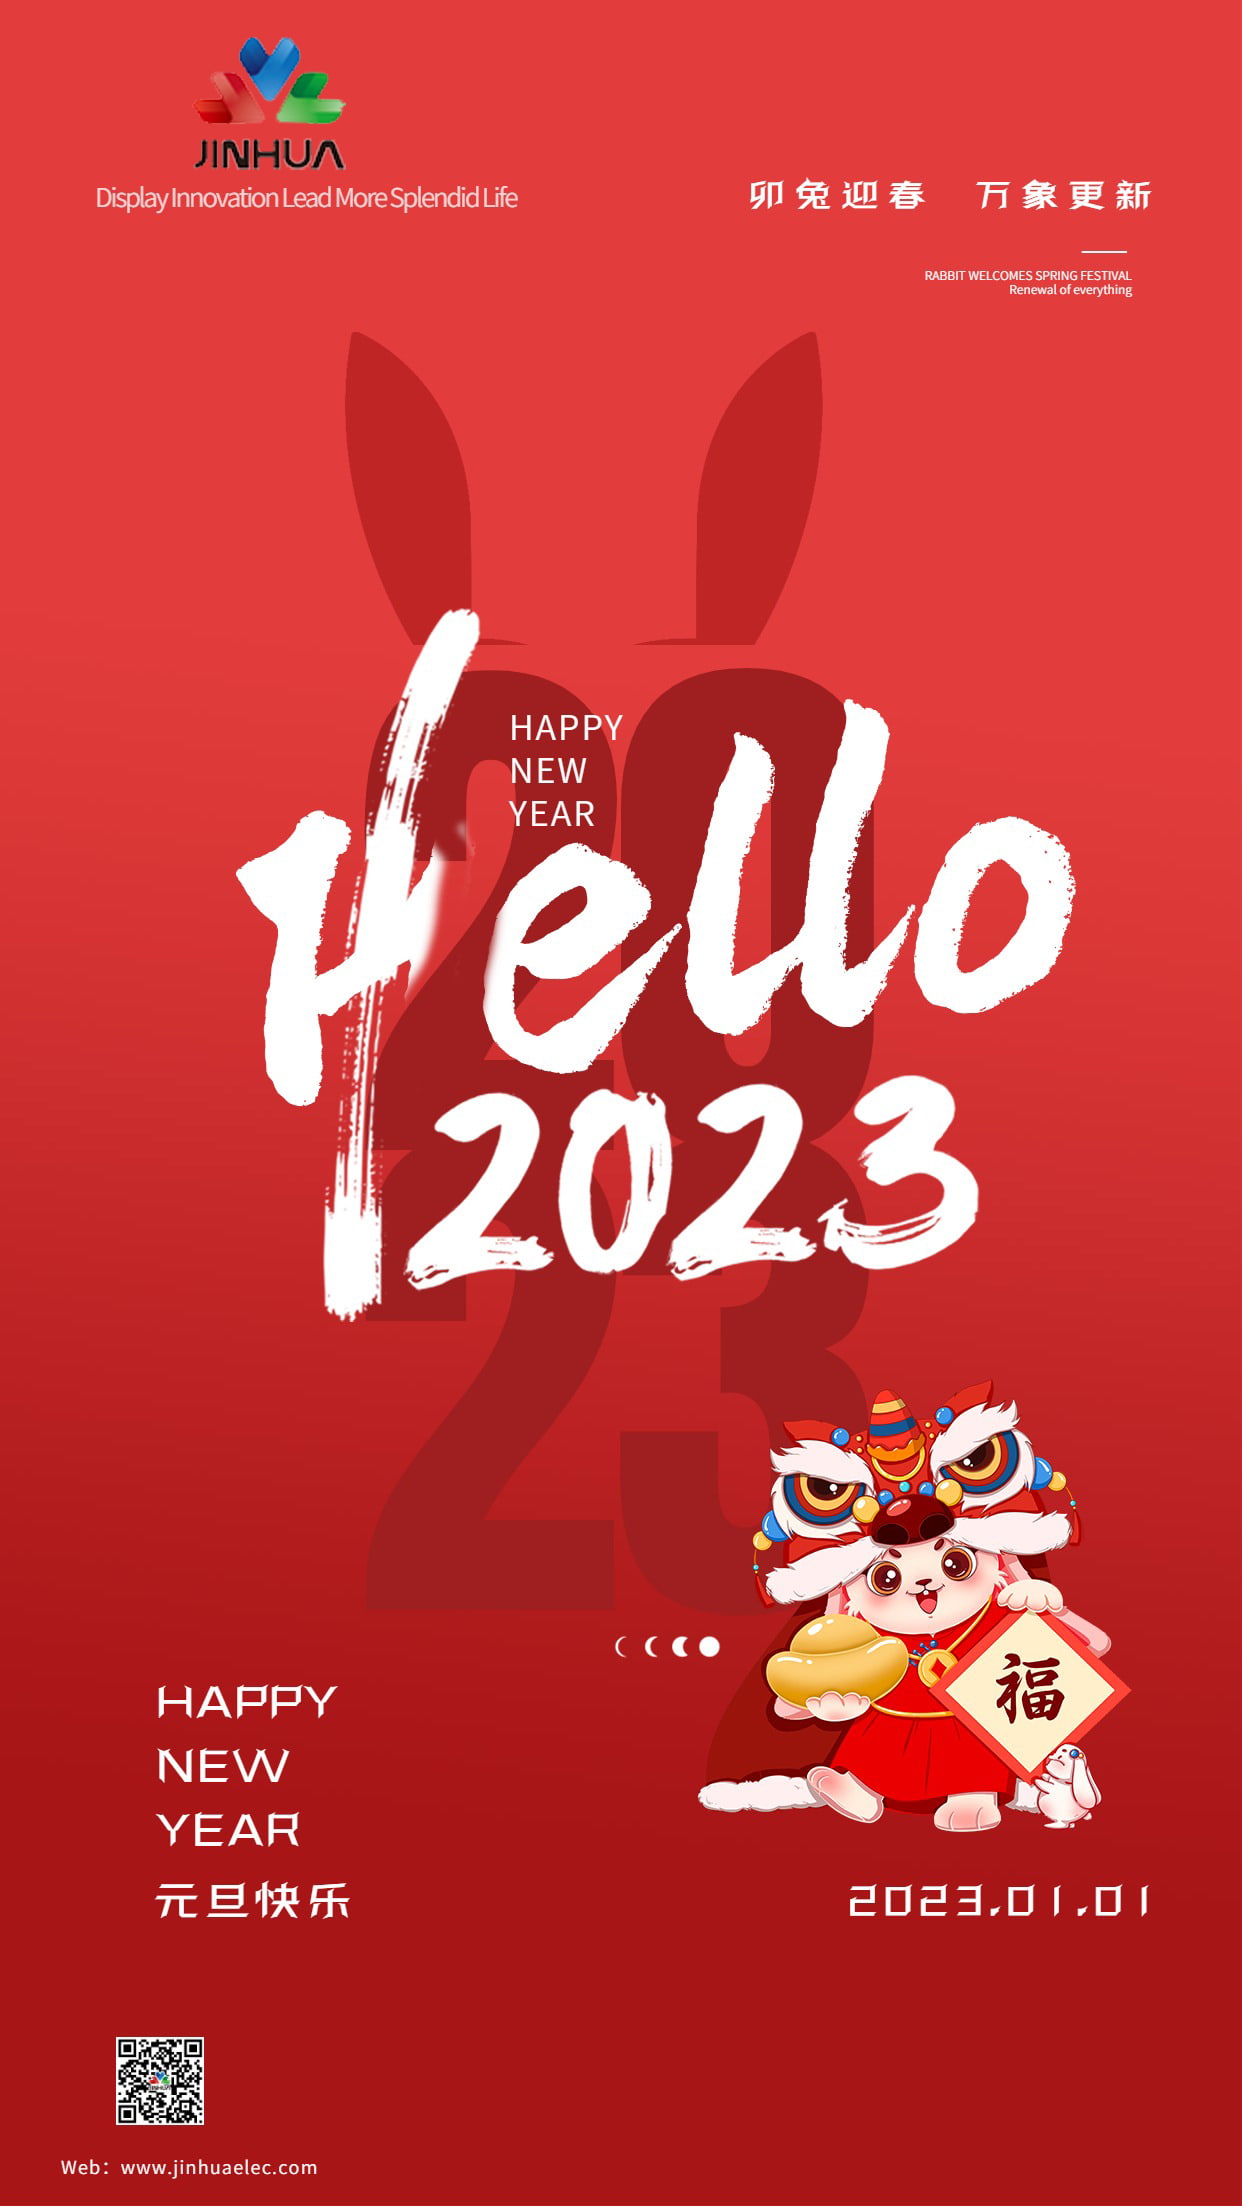 Frohes neues Jahr 2023!